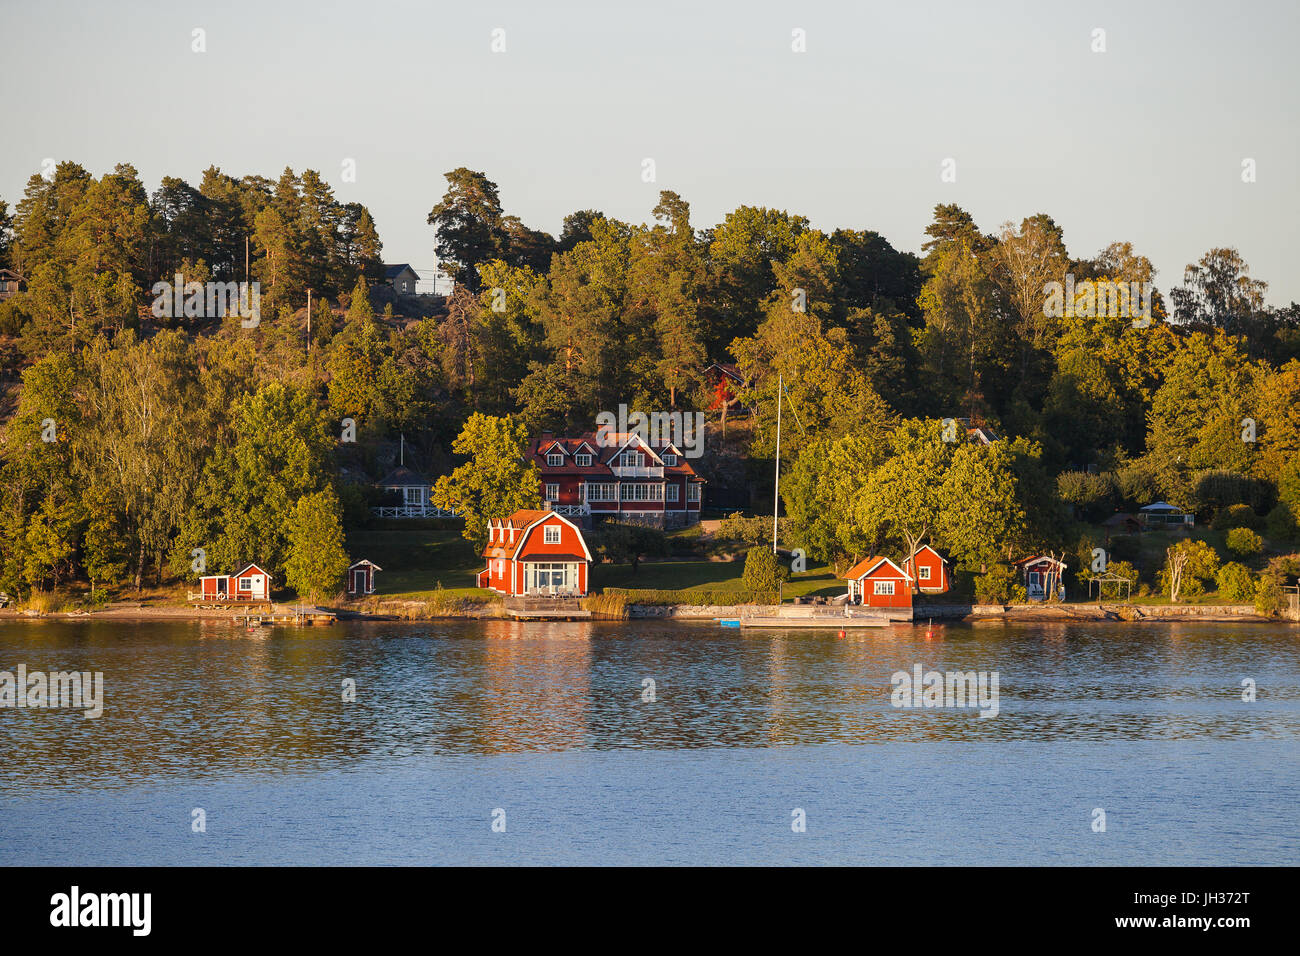 Blick auf Luxus-Ferienhäuser mit eigenem Strand am Stockholmer Schären, Schweden. Sommerzeit-Sonnenuntergang. Stockfoto